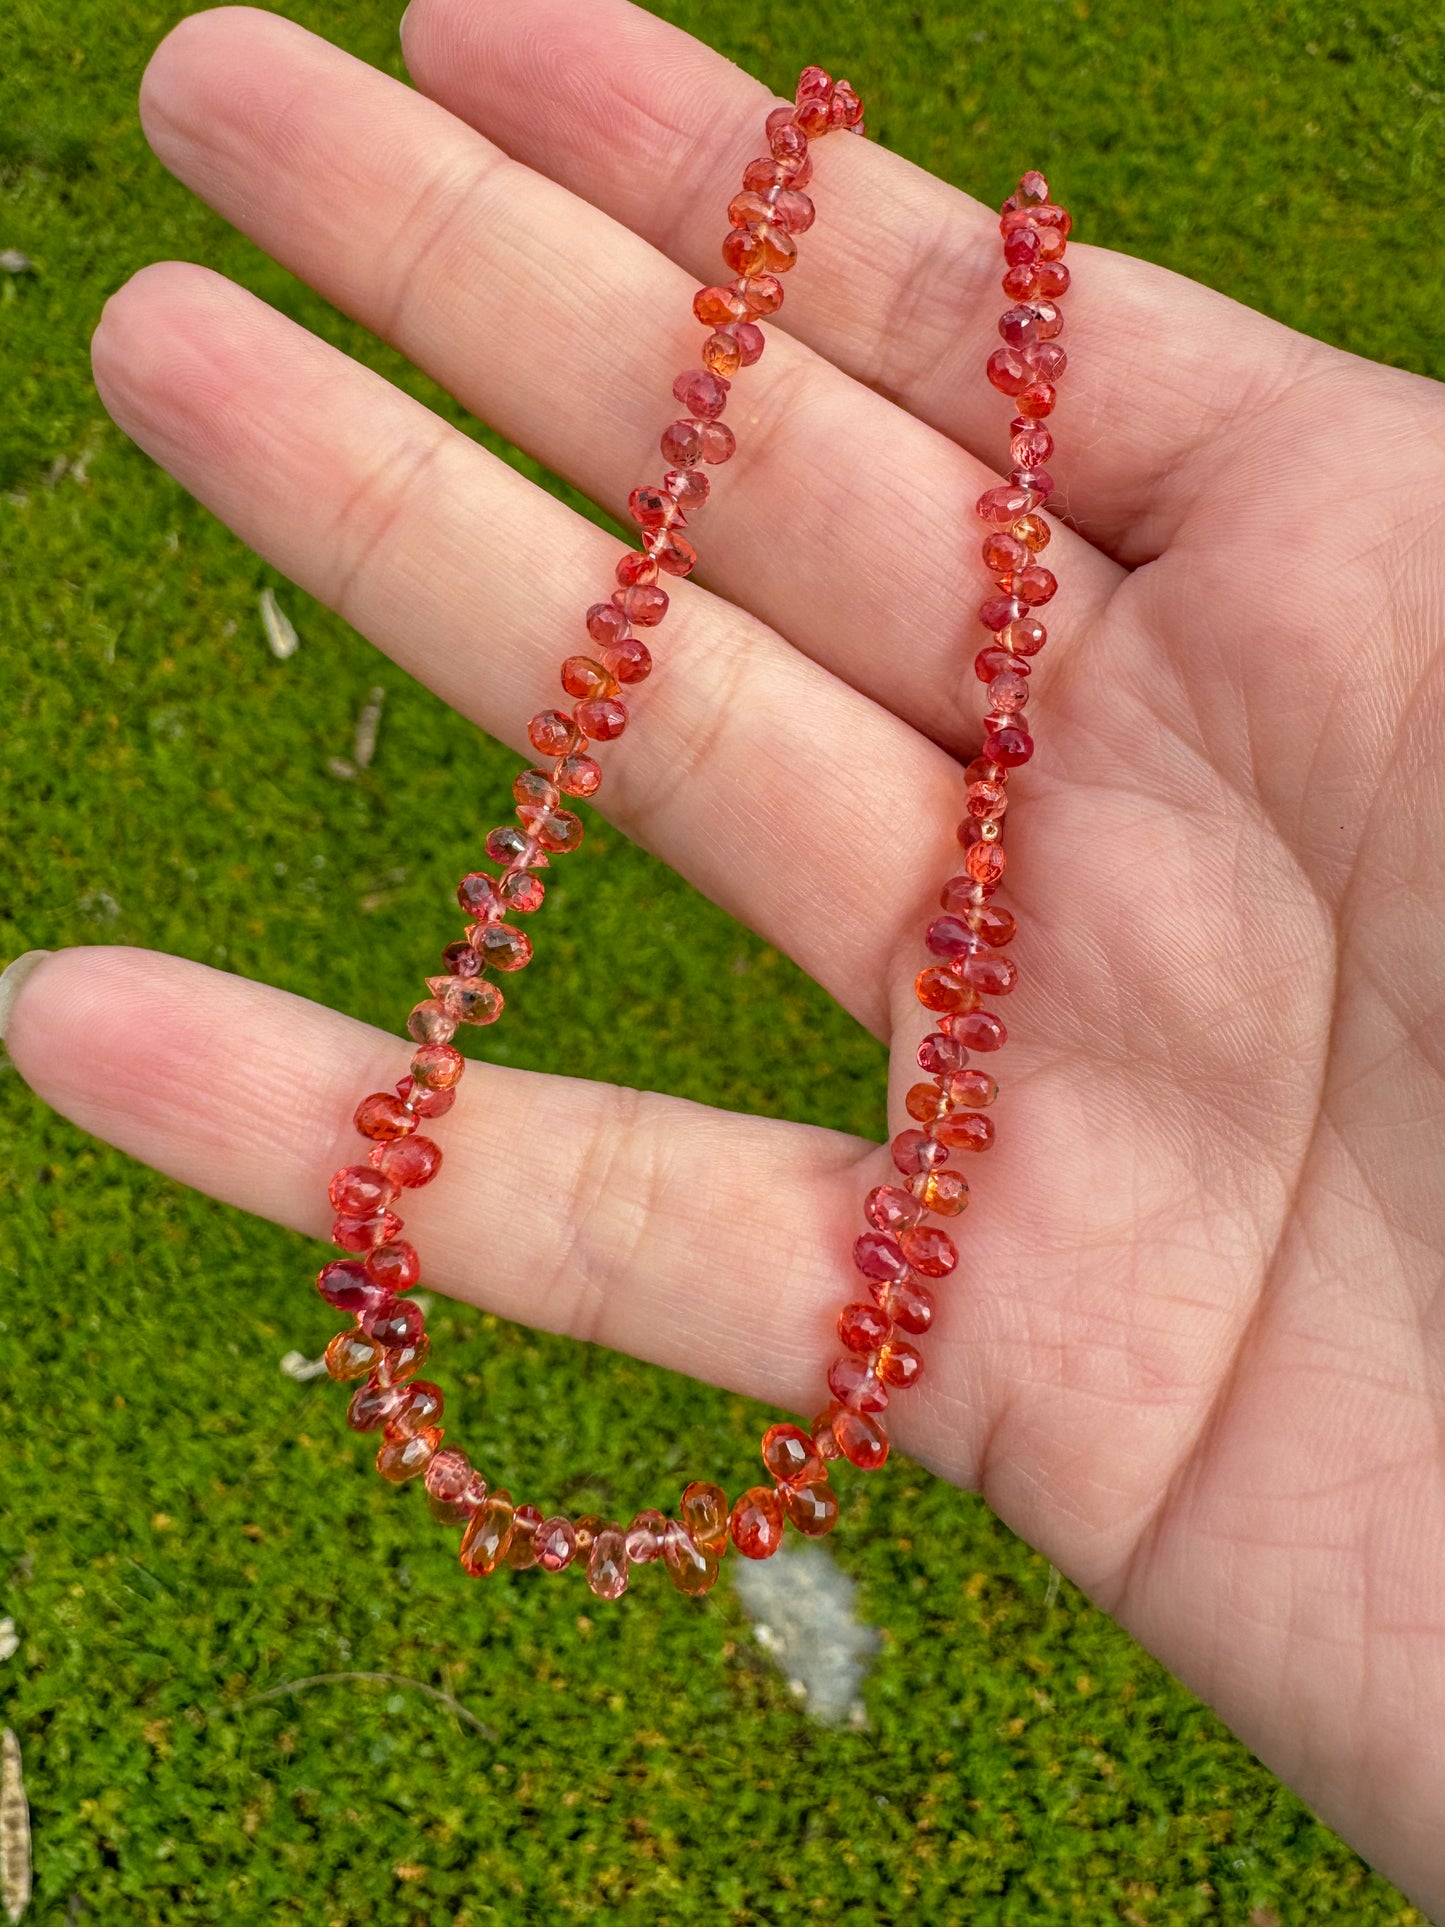 Blood Orange Sapphire Teardrops Beaded Necklace